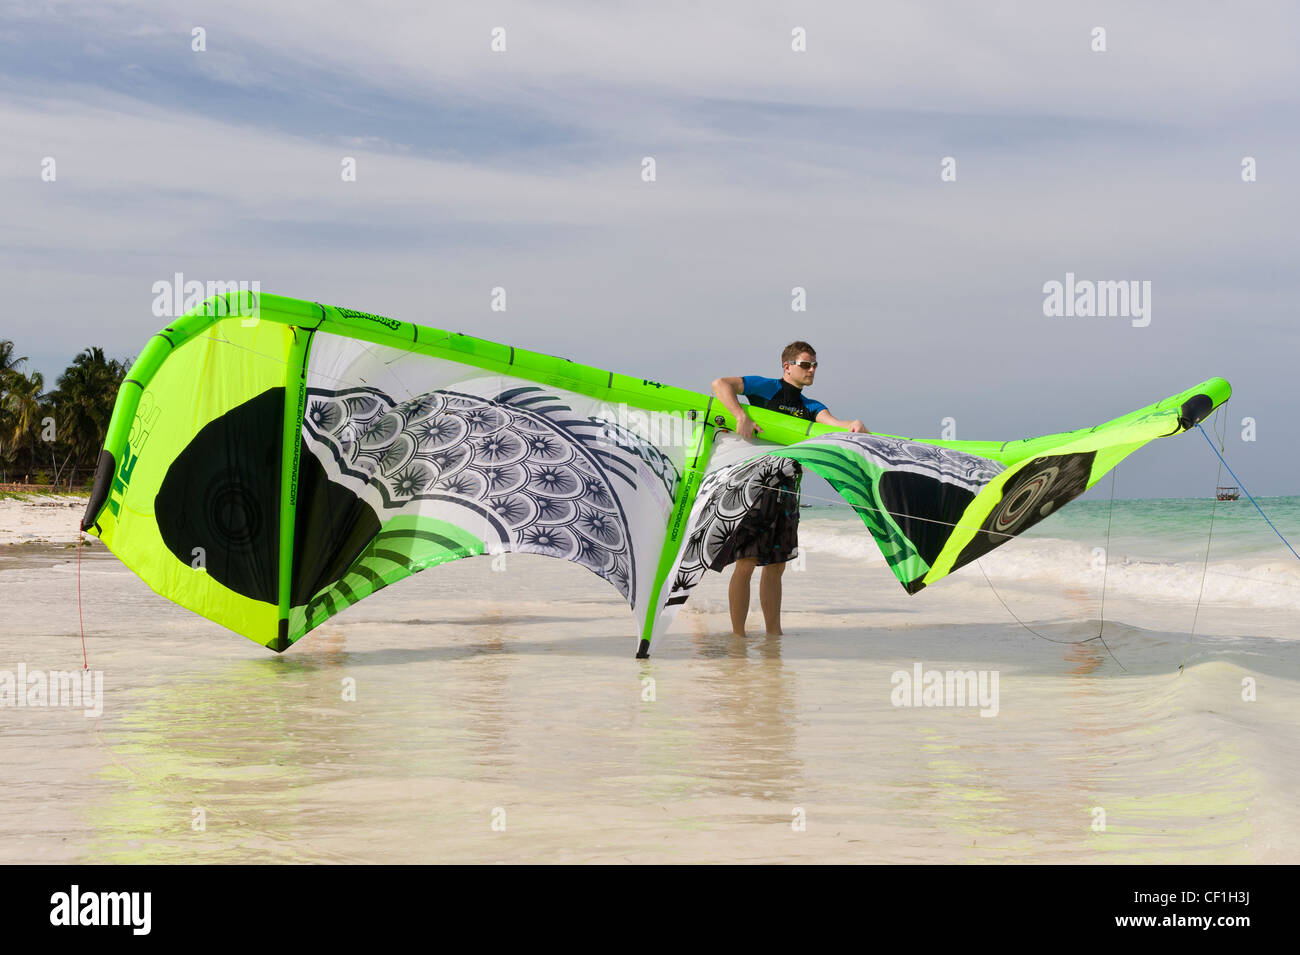 Kite surfer prepara il suo aquilone per lanciare, Paje, Zanzibar, Tanzania Foto Stock